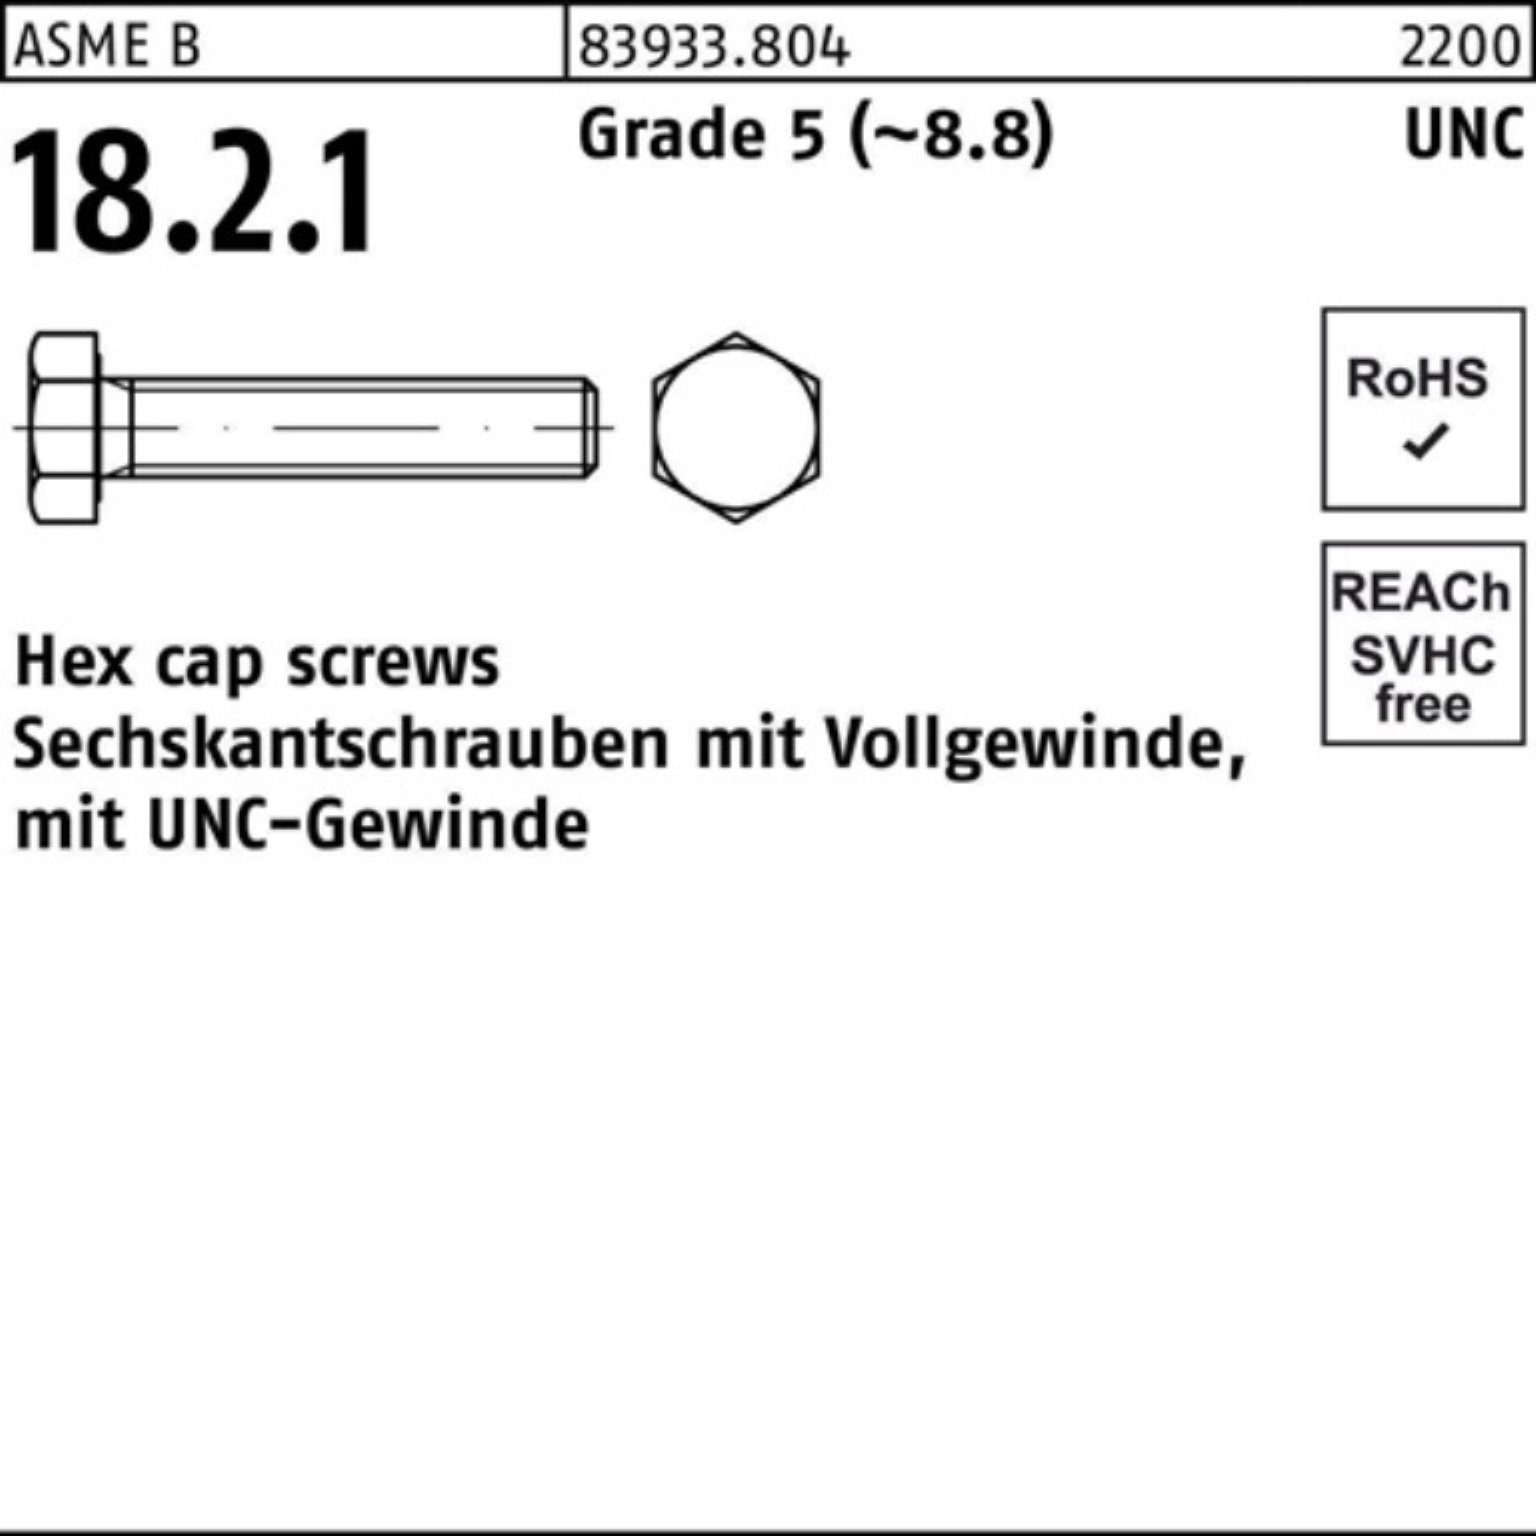 Reyher Sechskantschraube 100er Pack Sechskantschraube R 83933 UNC-Gewinde VG 1/4x 1 Grade 5 (8